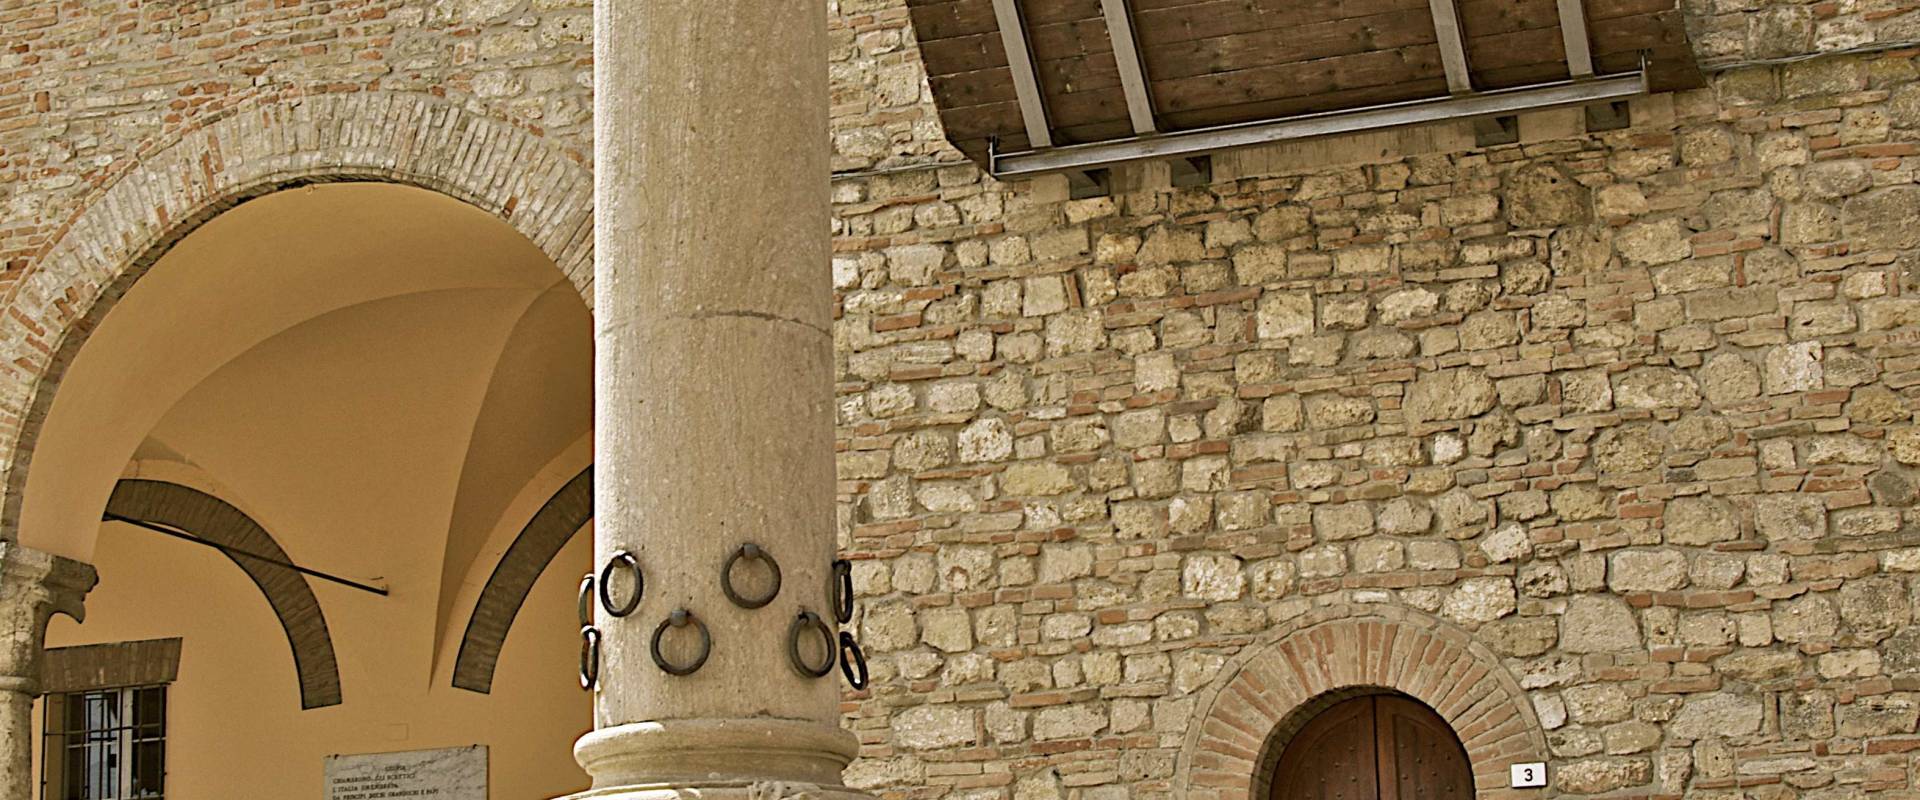 La Colonna dell'Ospitalità è il simbolo che caratterizza Bertinoro foto di Caba2011